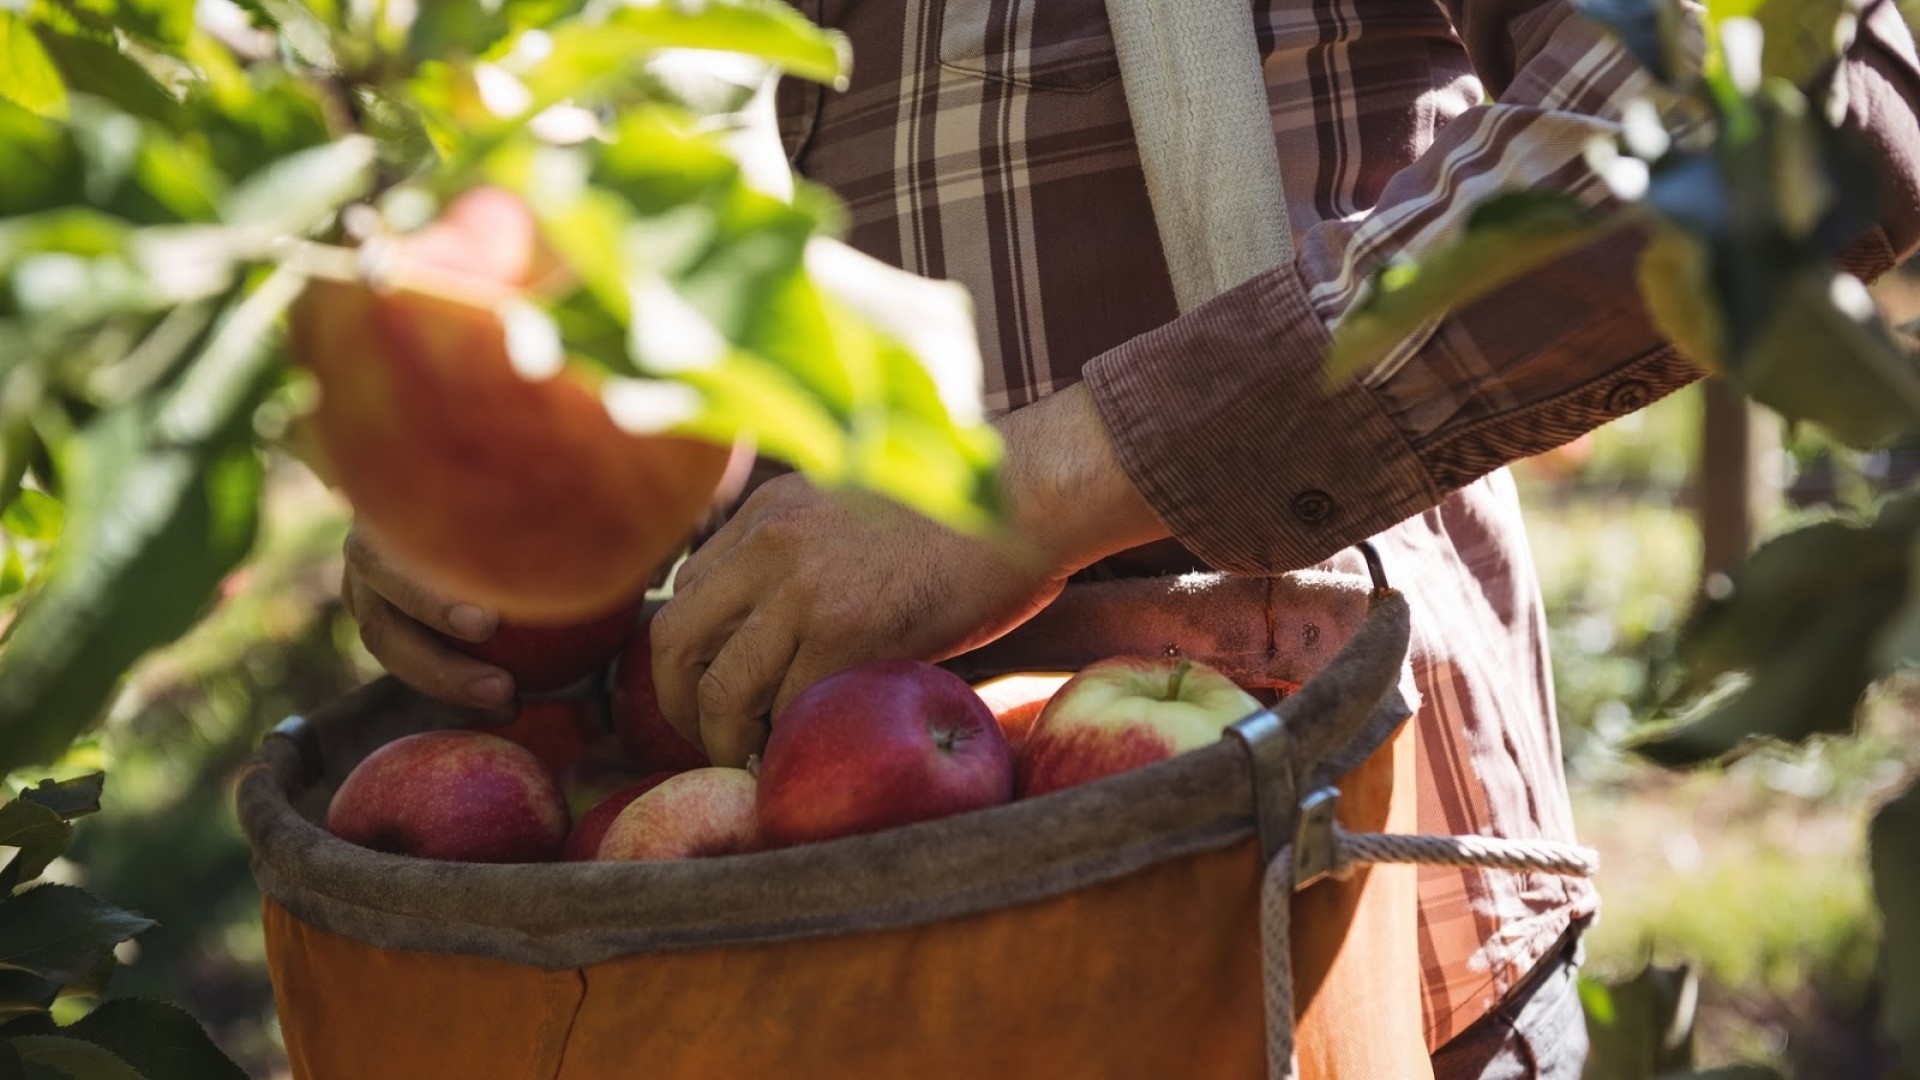 A farmworker picks apples